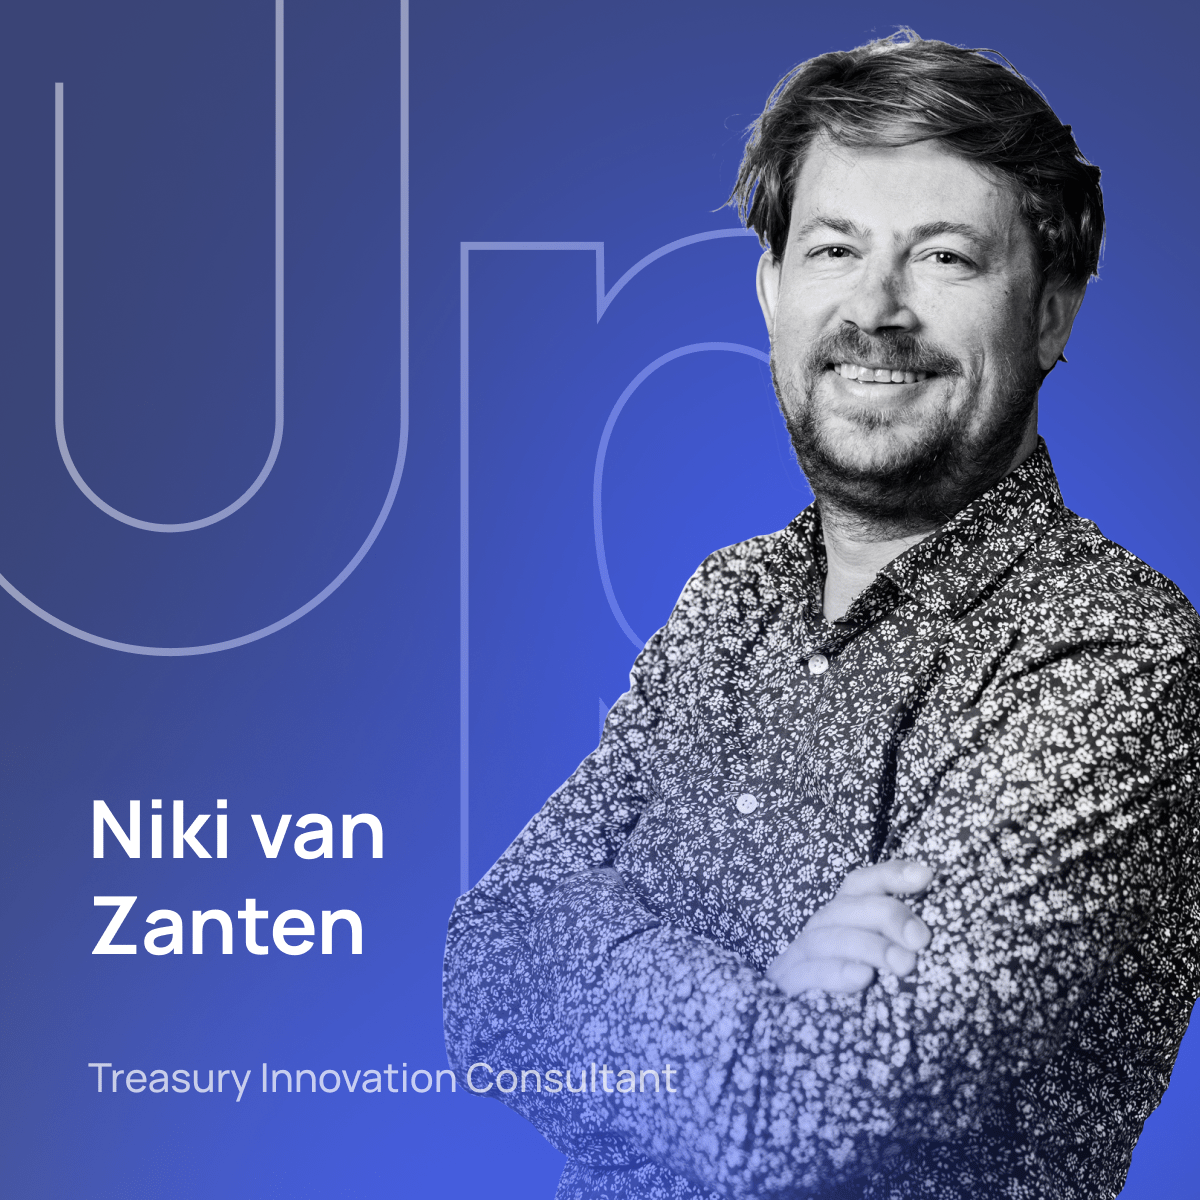 Portrait of Niki van Zanten, Treasury Innovation Manager and author of TreasurUp's newsletter, TreasurUpdate